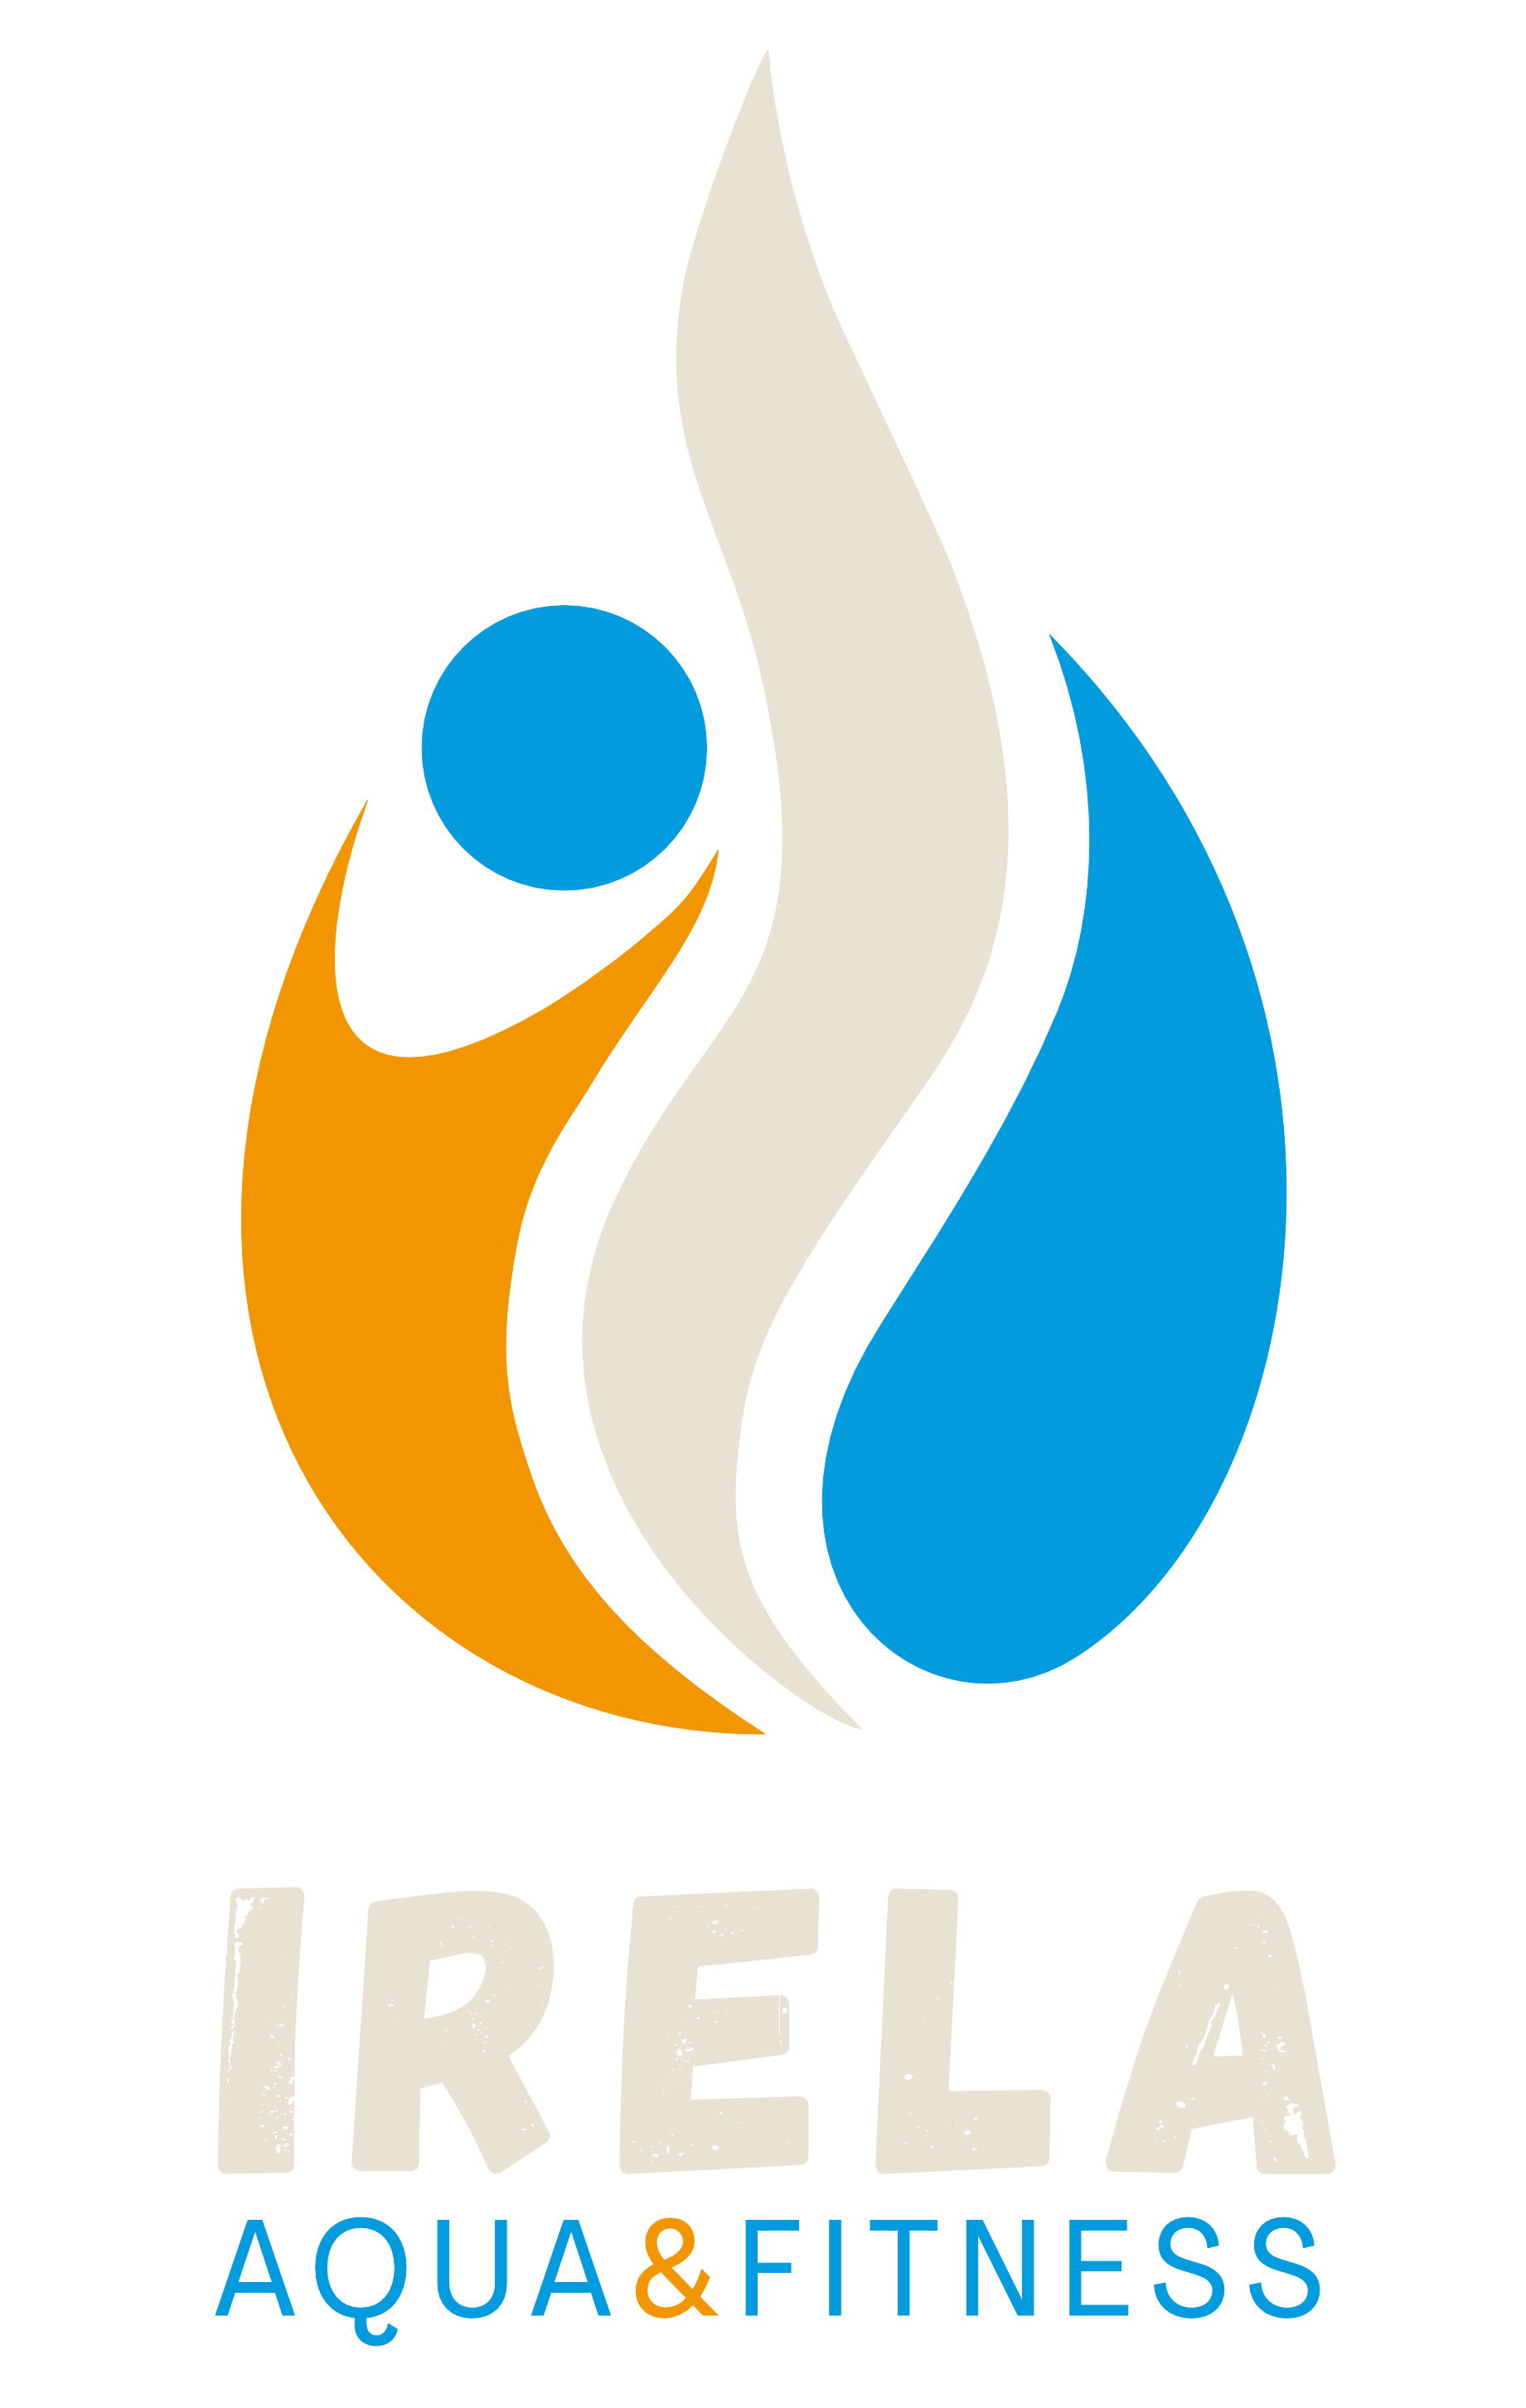 Irela13coach logo